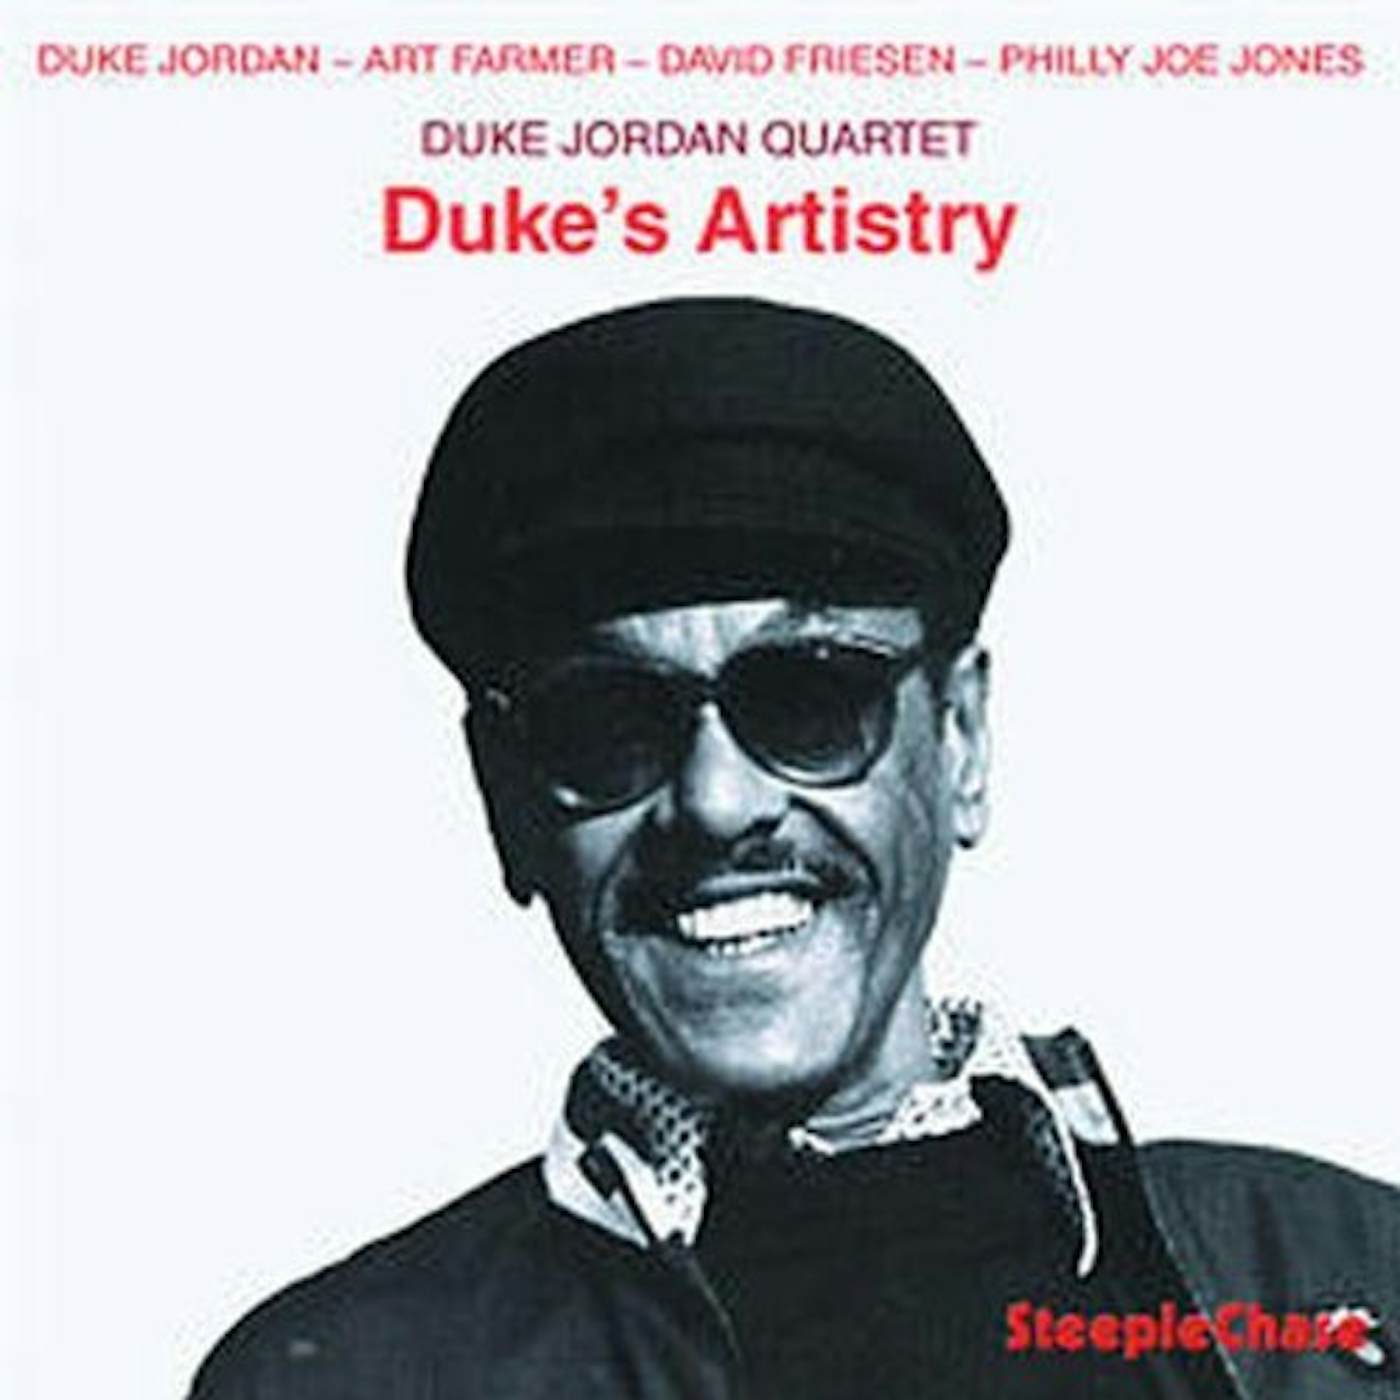 Duke Jordan DUKES ARTISTRY CD